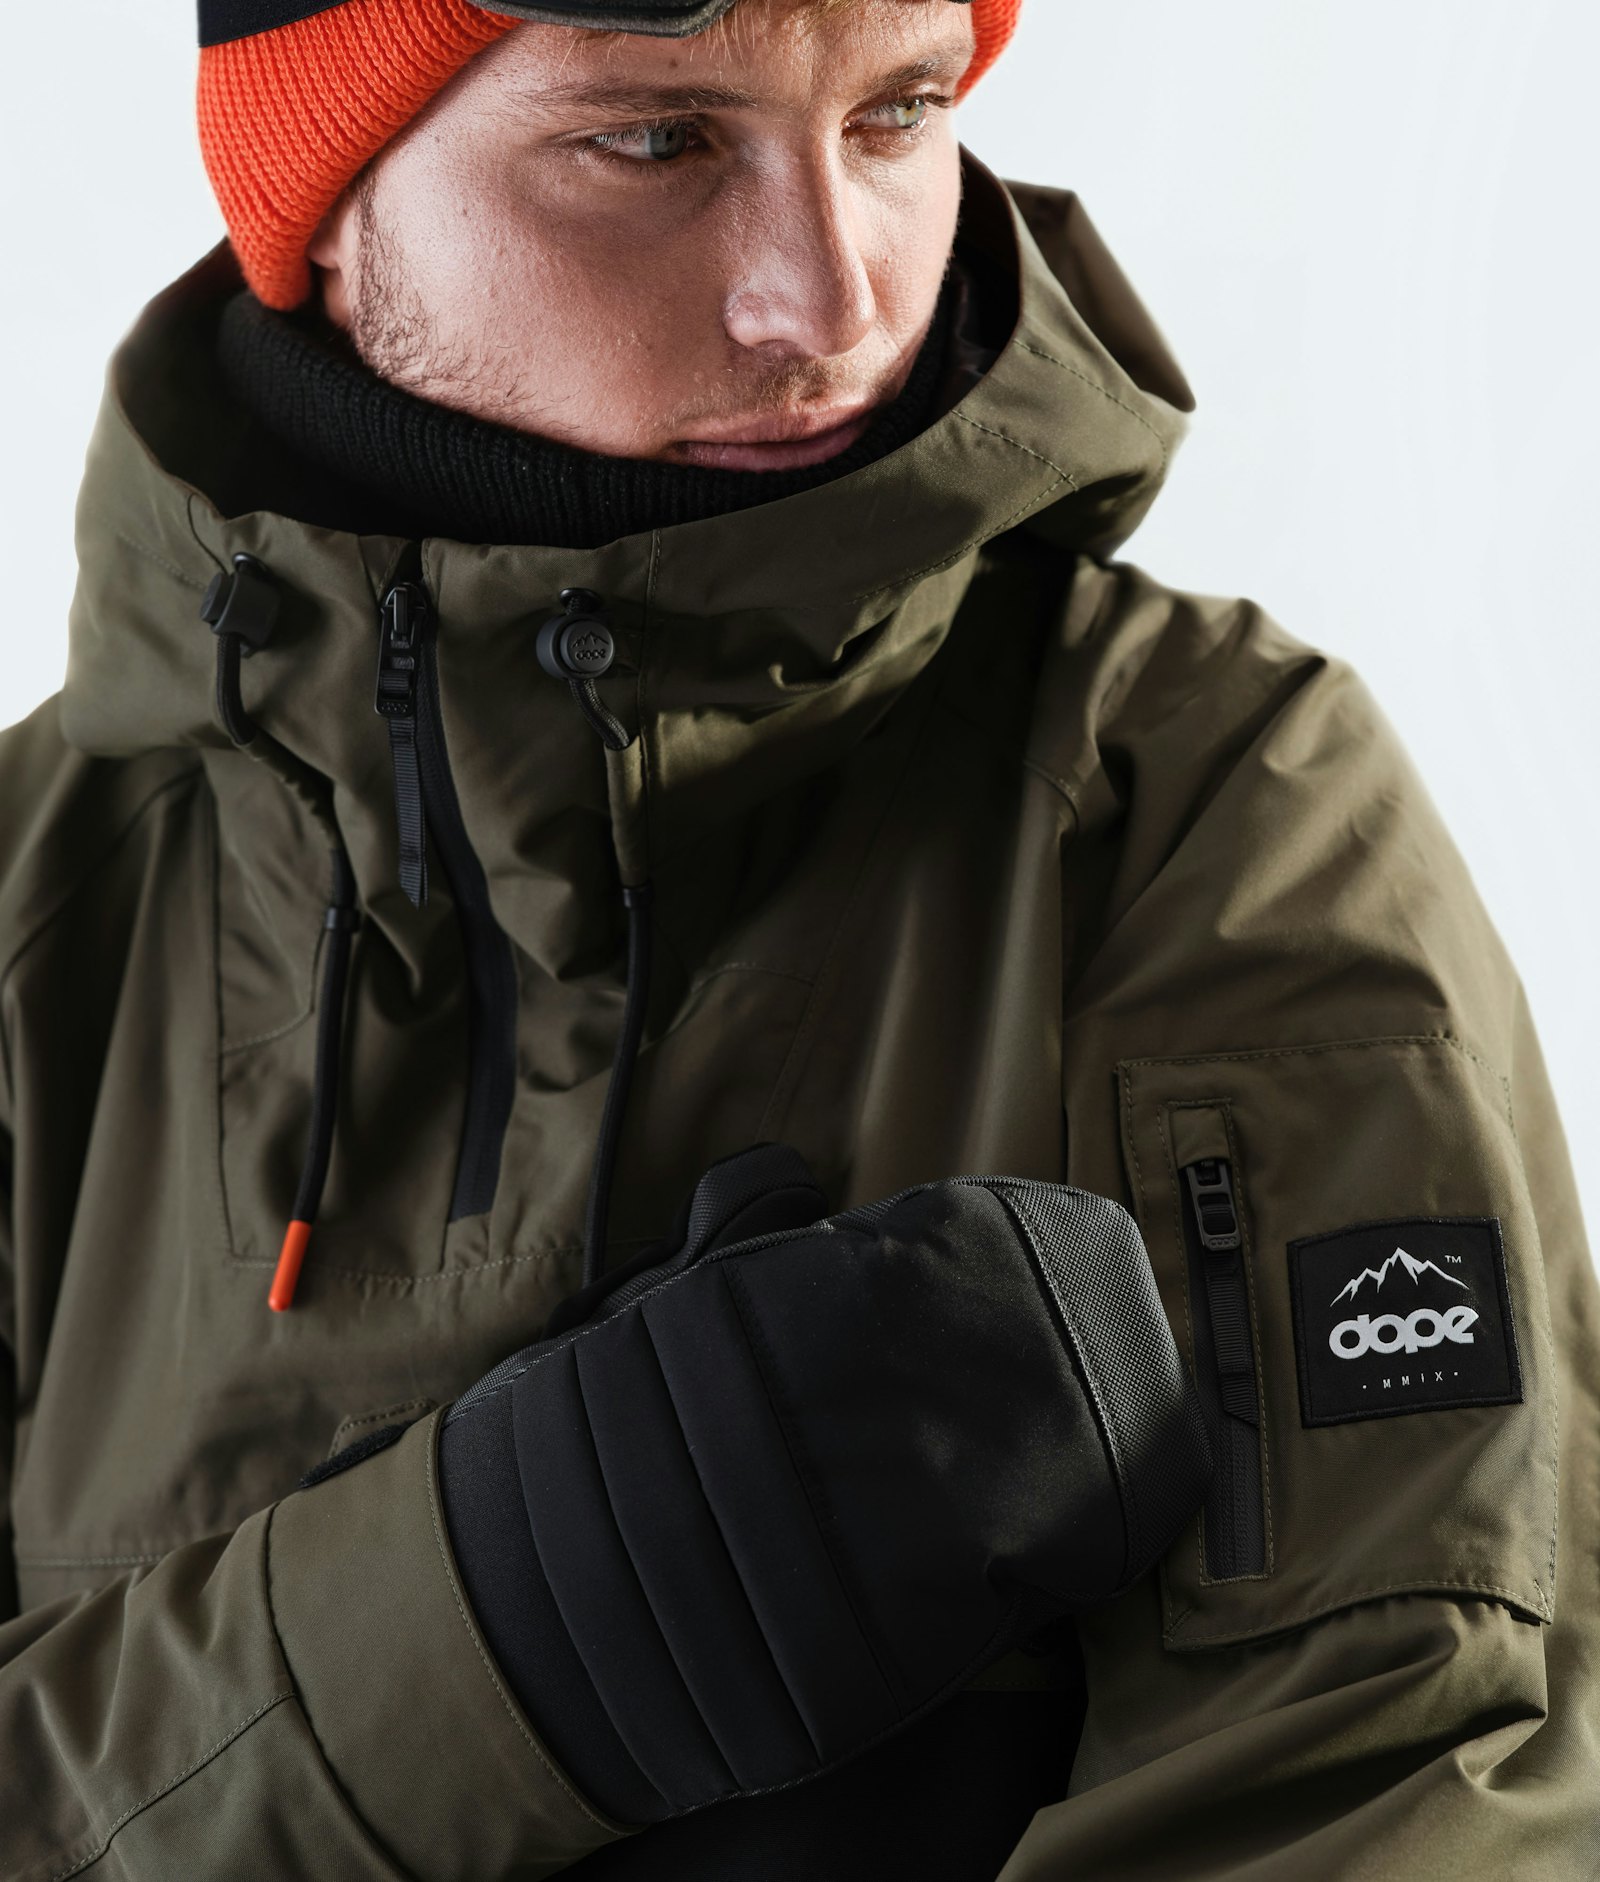 Annok 2020 Veste Snowboard Homme Olive Green/Black